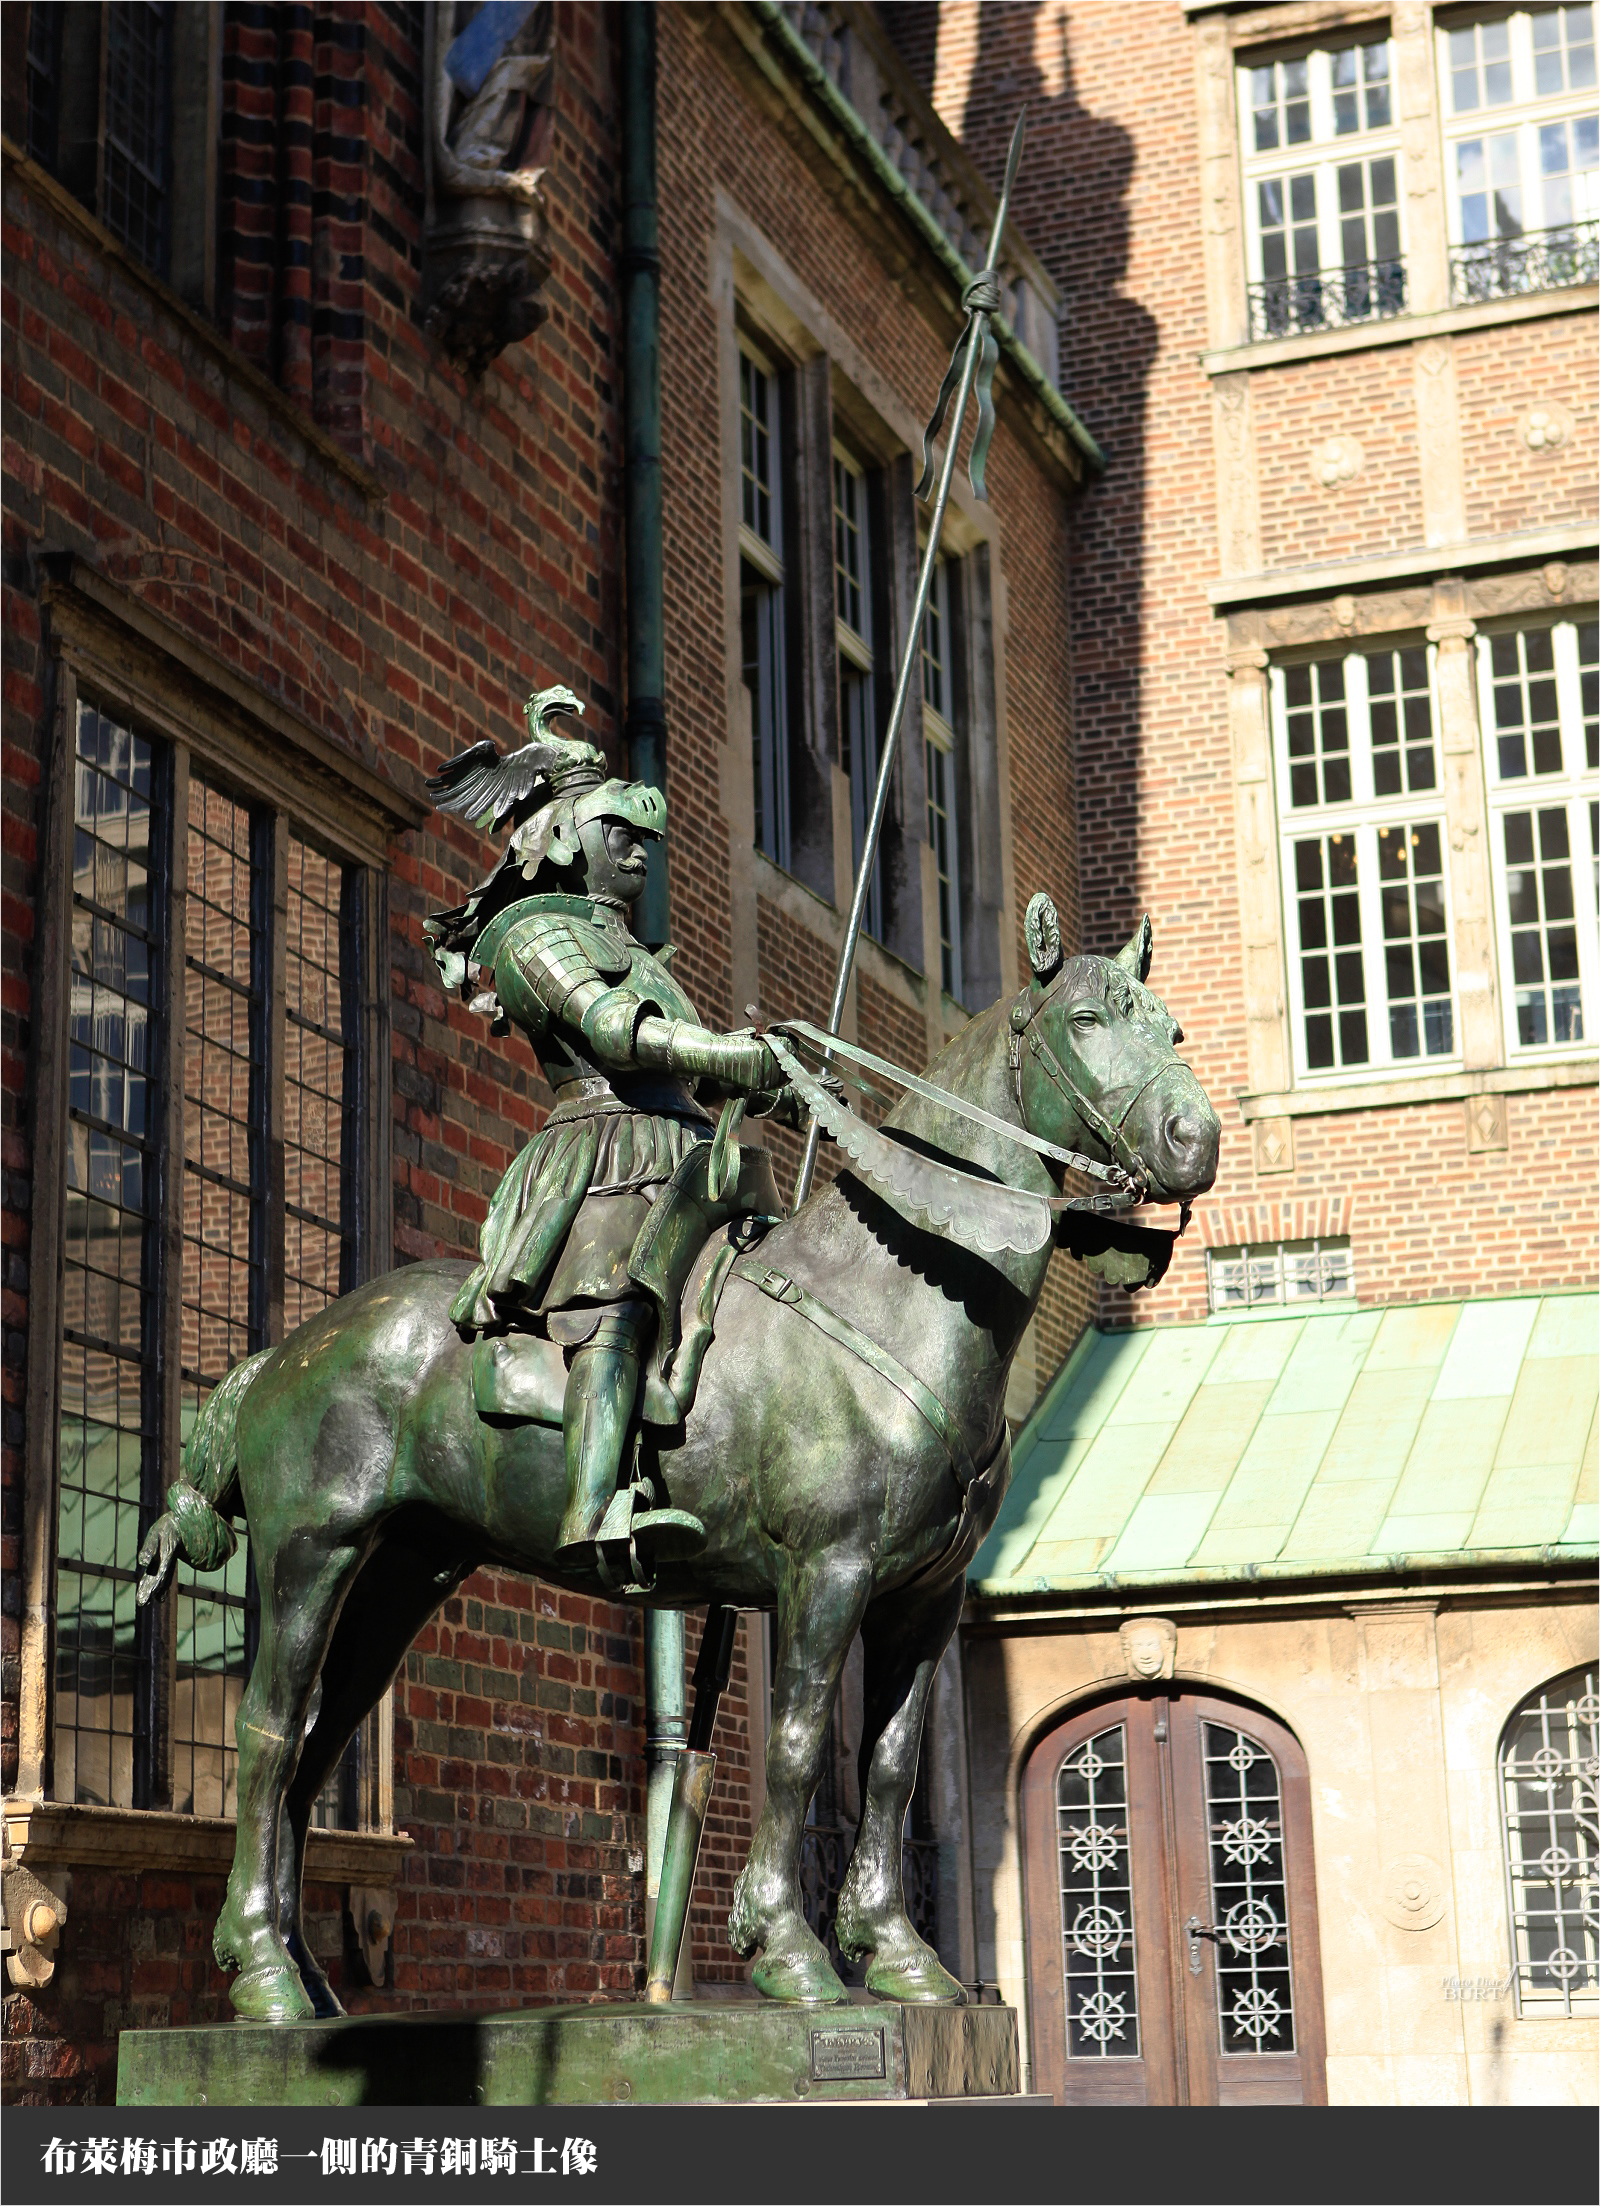 布萊梅市政廳一側的青銅騎士像